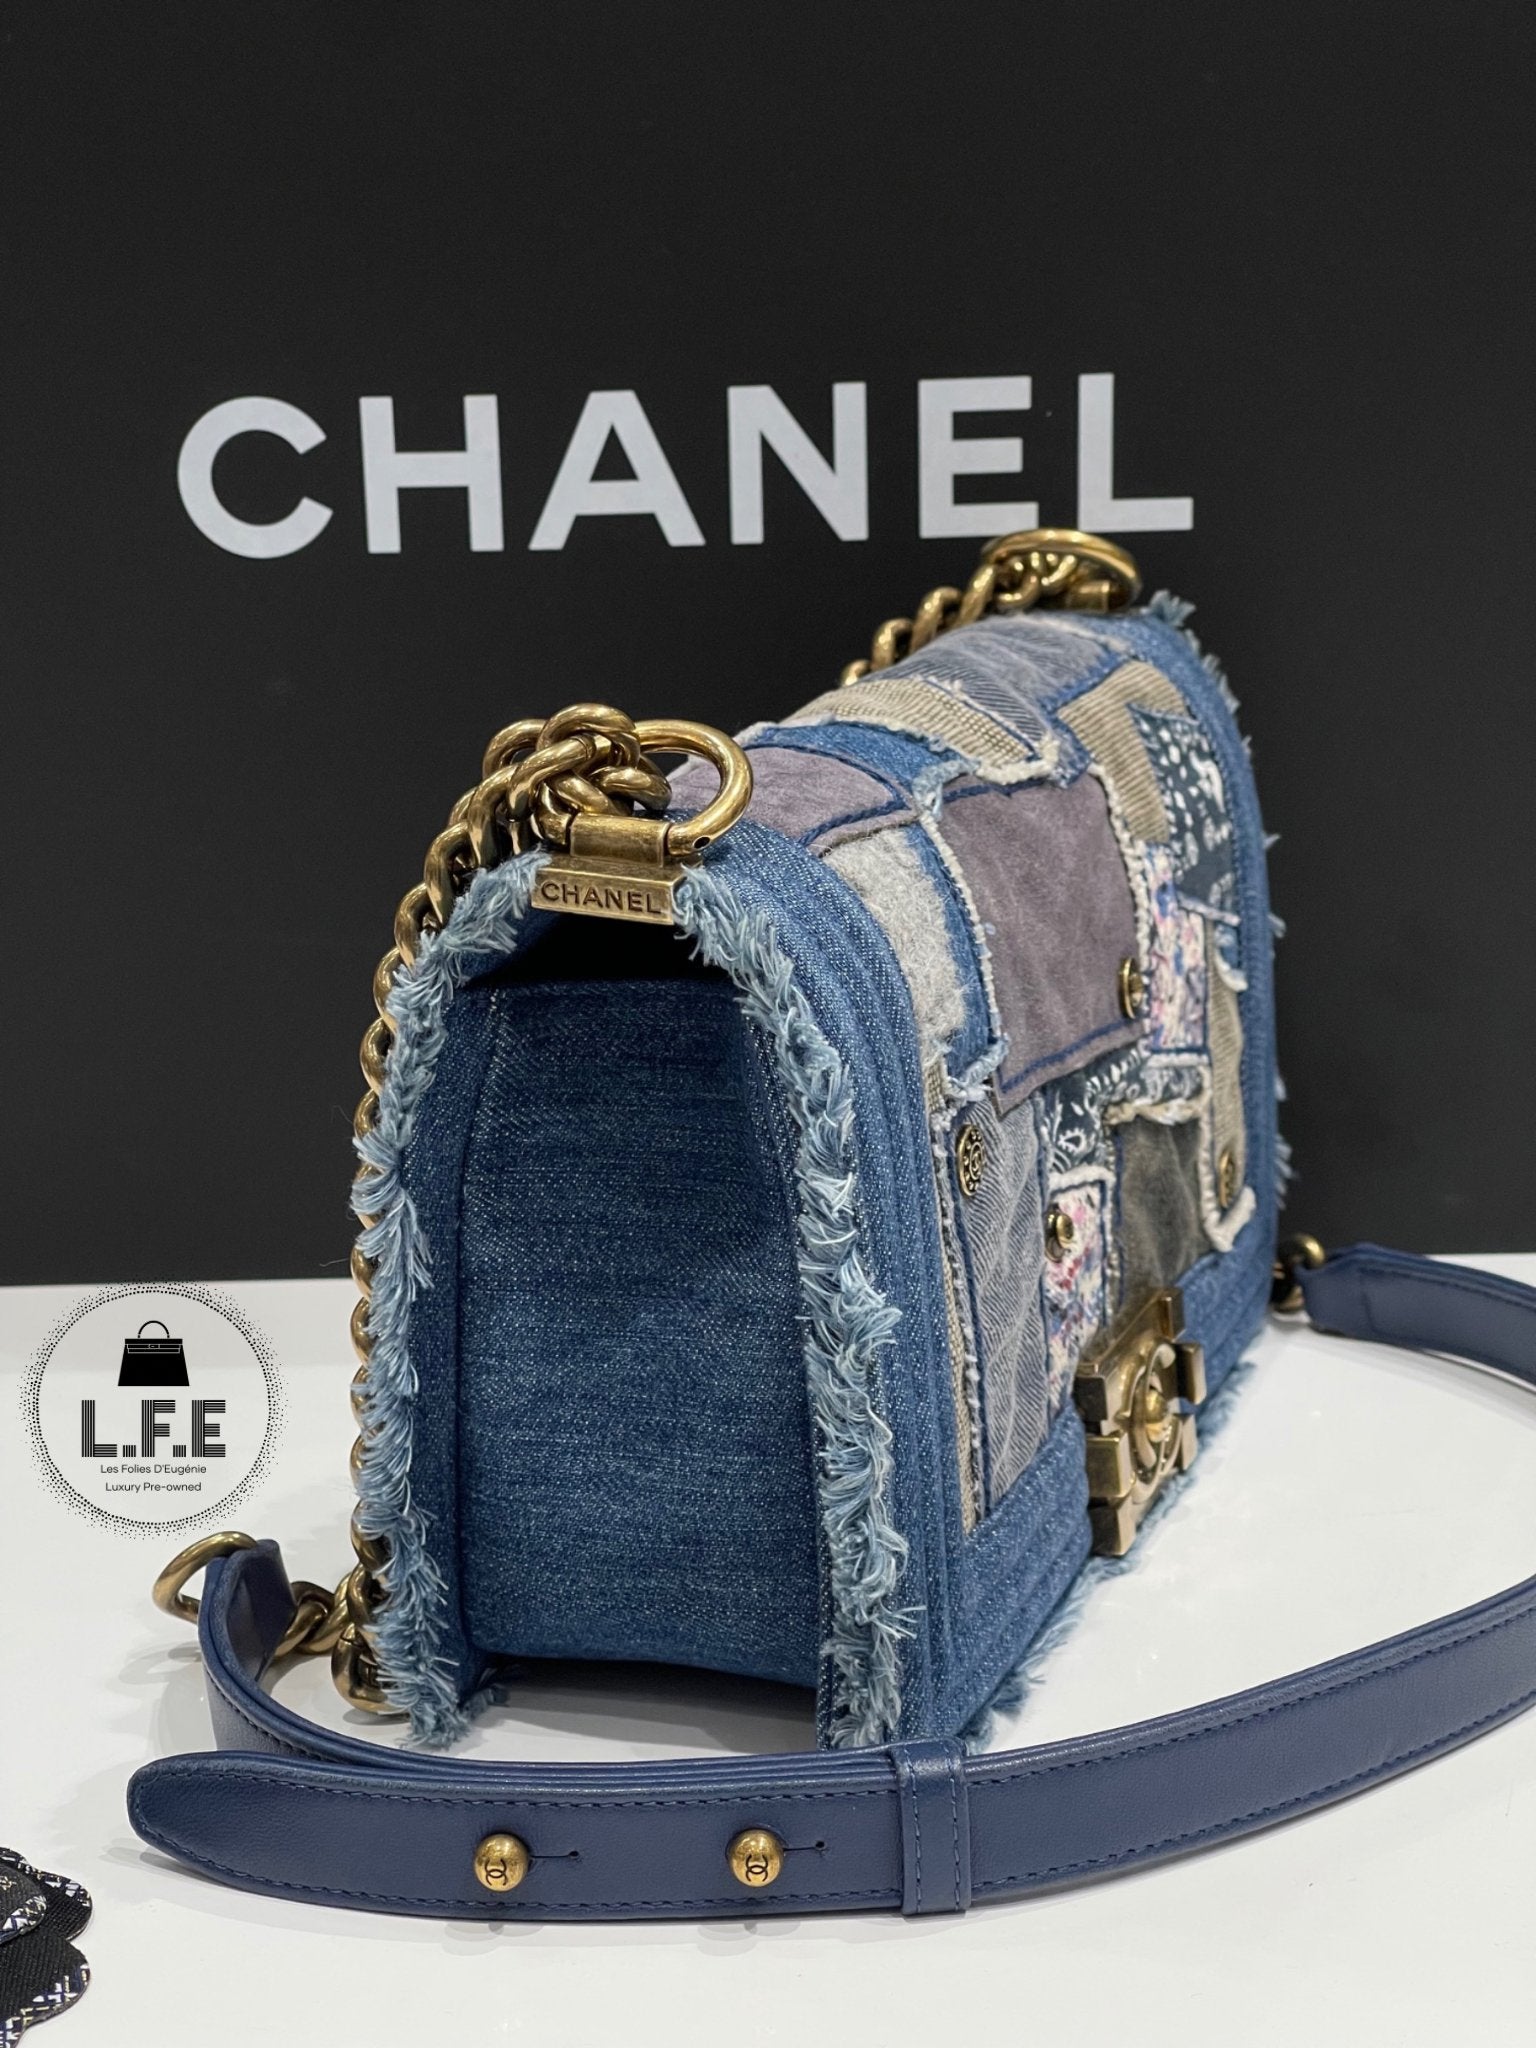 Chanel - Sac Boy medium denim patchwork 